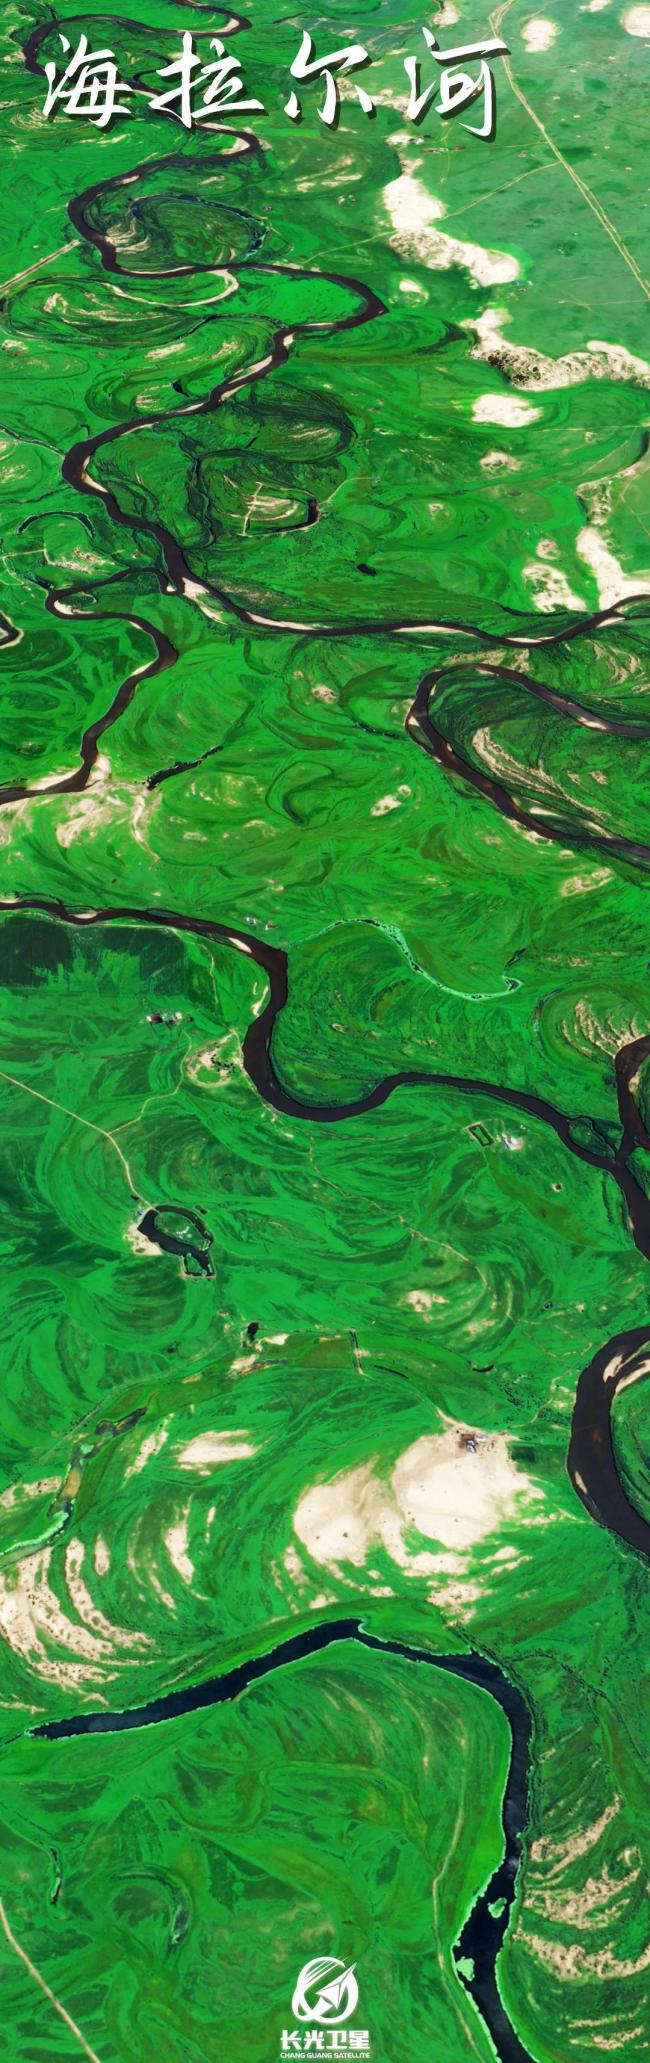 卫星图看中国河流 大地脉络一目了然